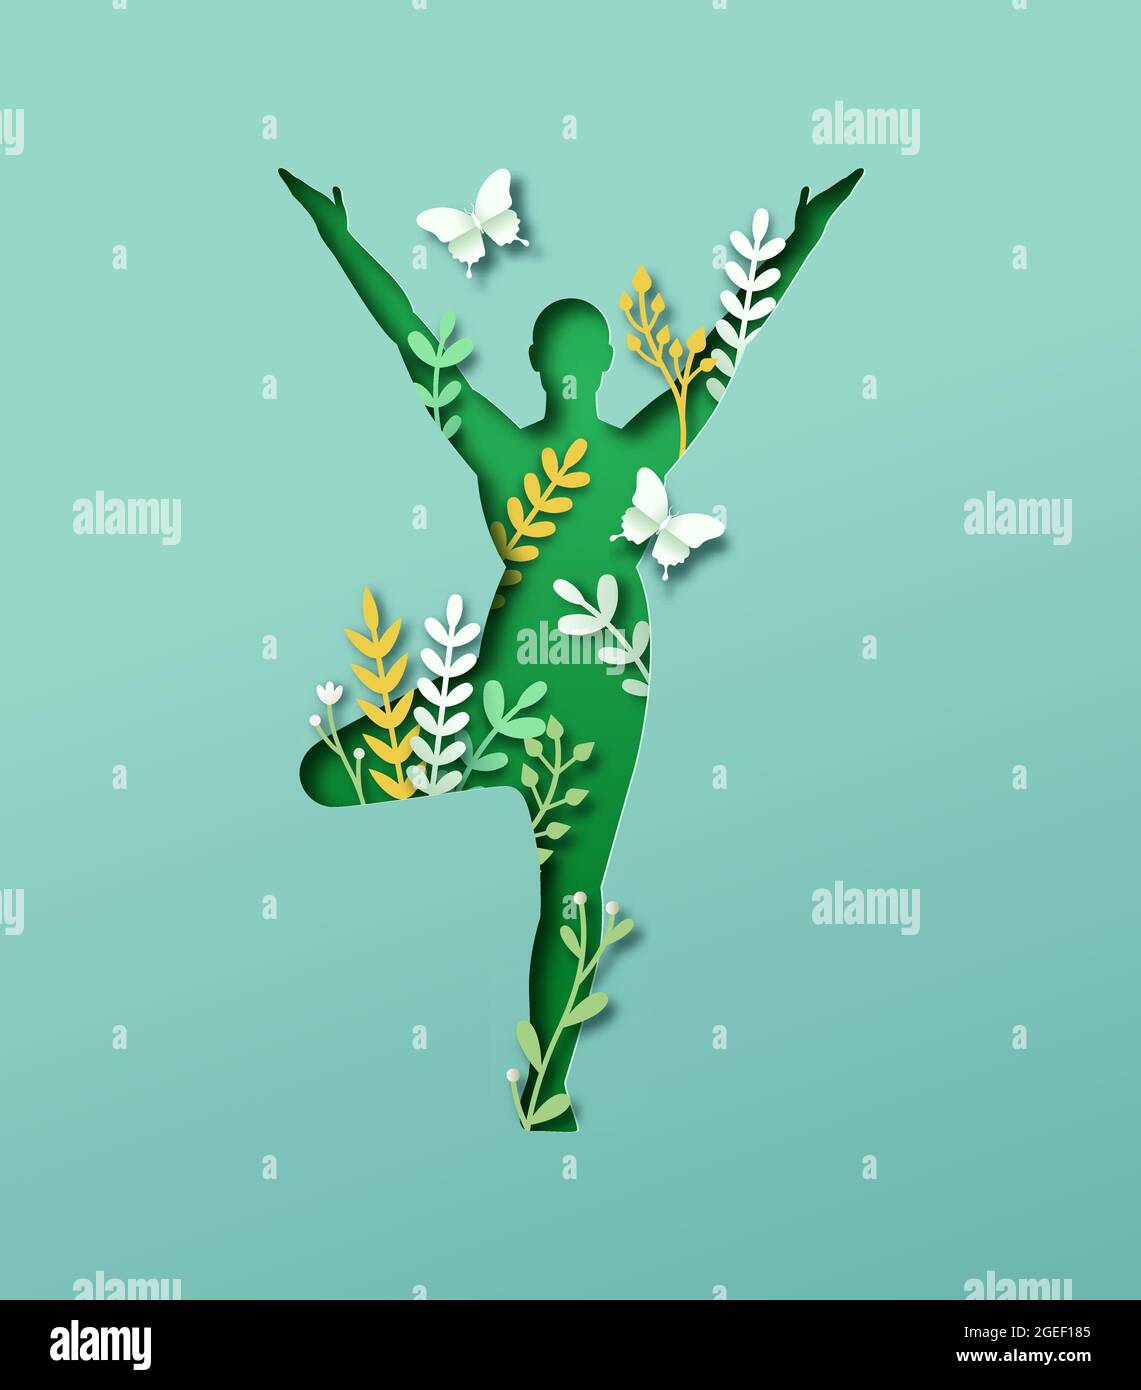 Papercut uomo corpo silhouette fare albero yoga posa con 3d carta taglio foglia pianta e farfalla. Concetto di connessione alla natura per uno stile di vita sano o la pace Illustrazione Vettoriale